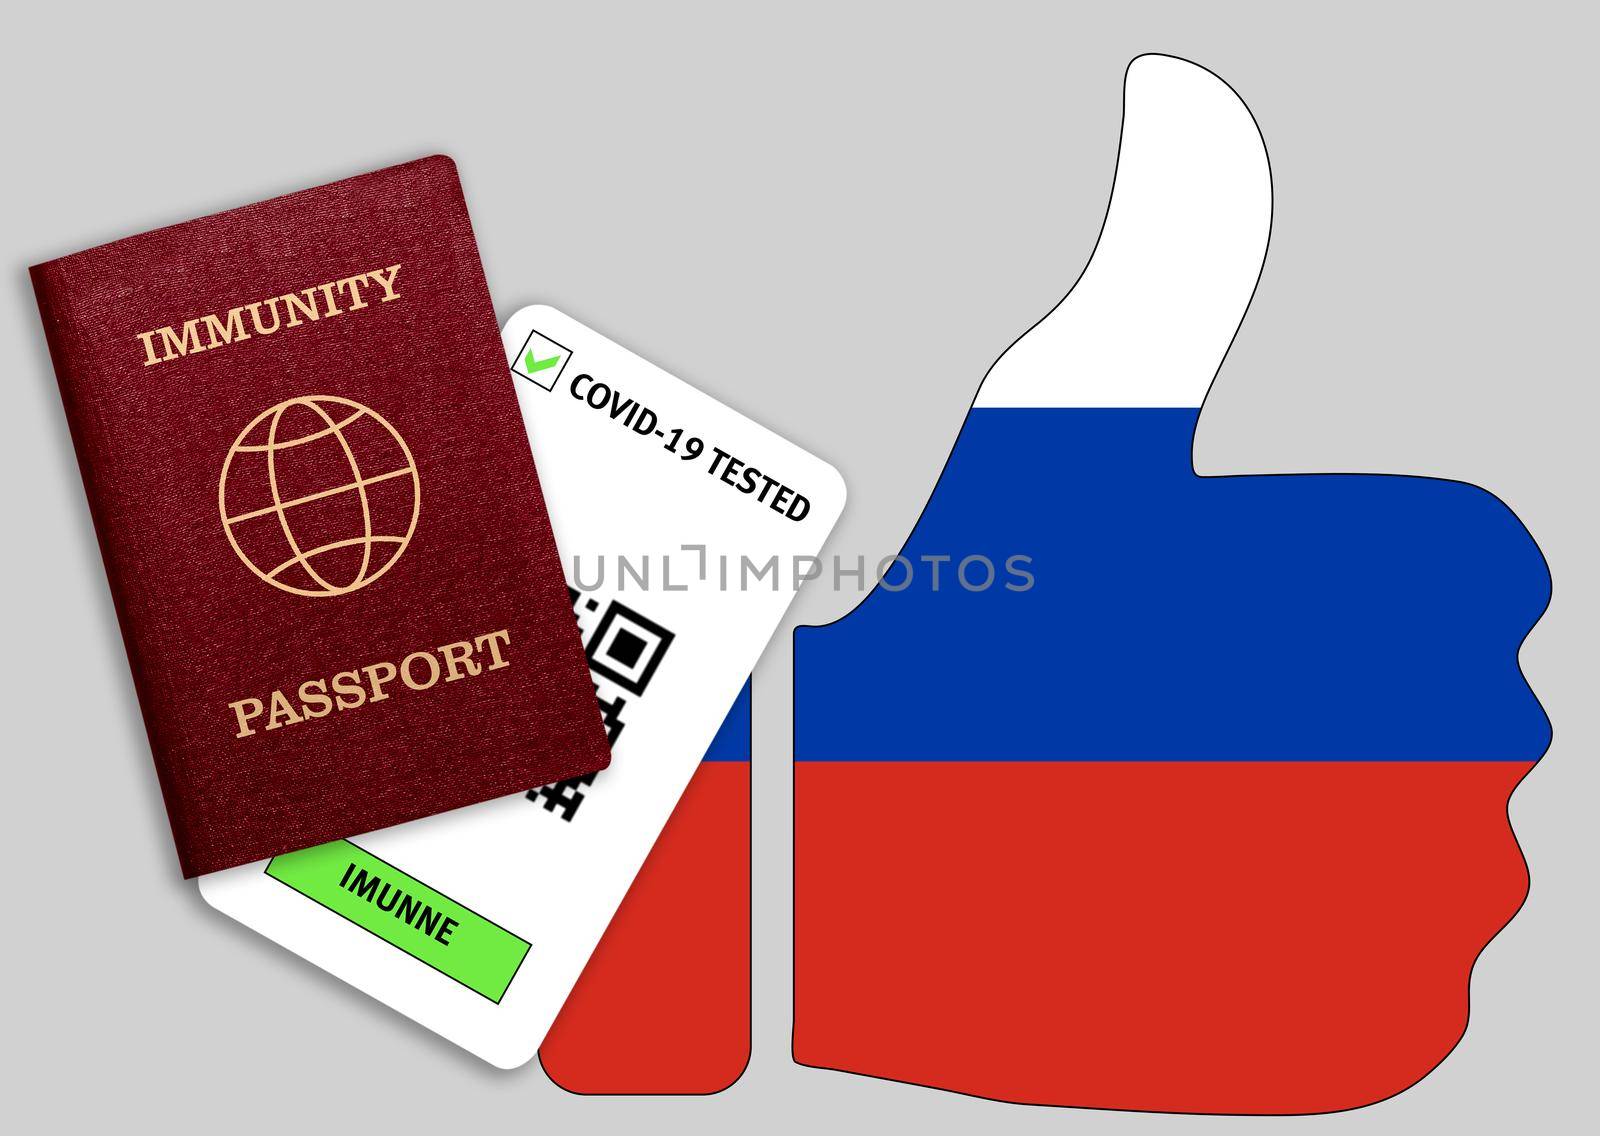 Immune passport and coronavirus test with thumb up with flag of Russia by galinasharapova